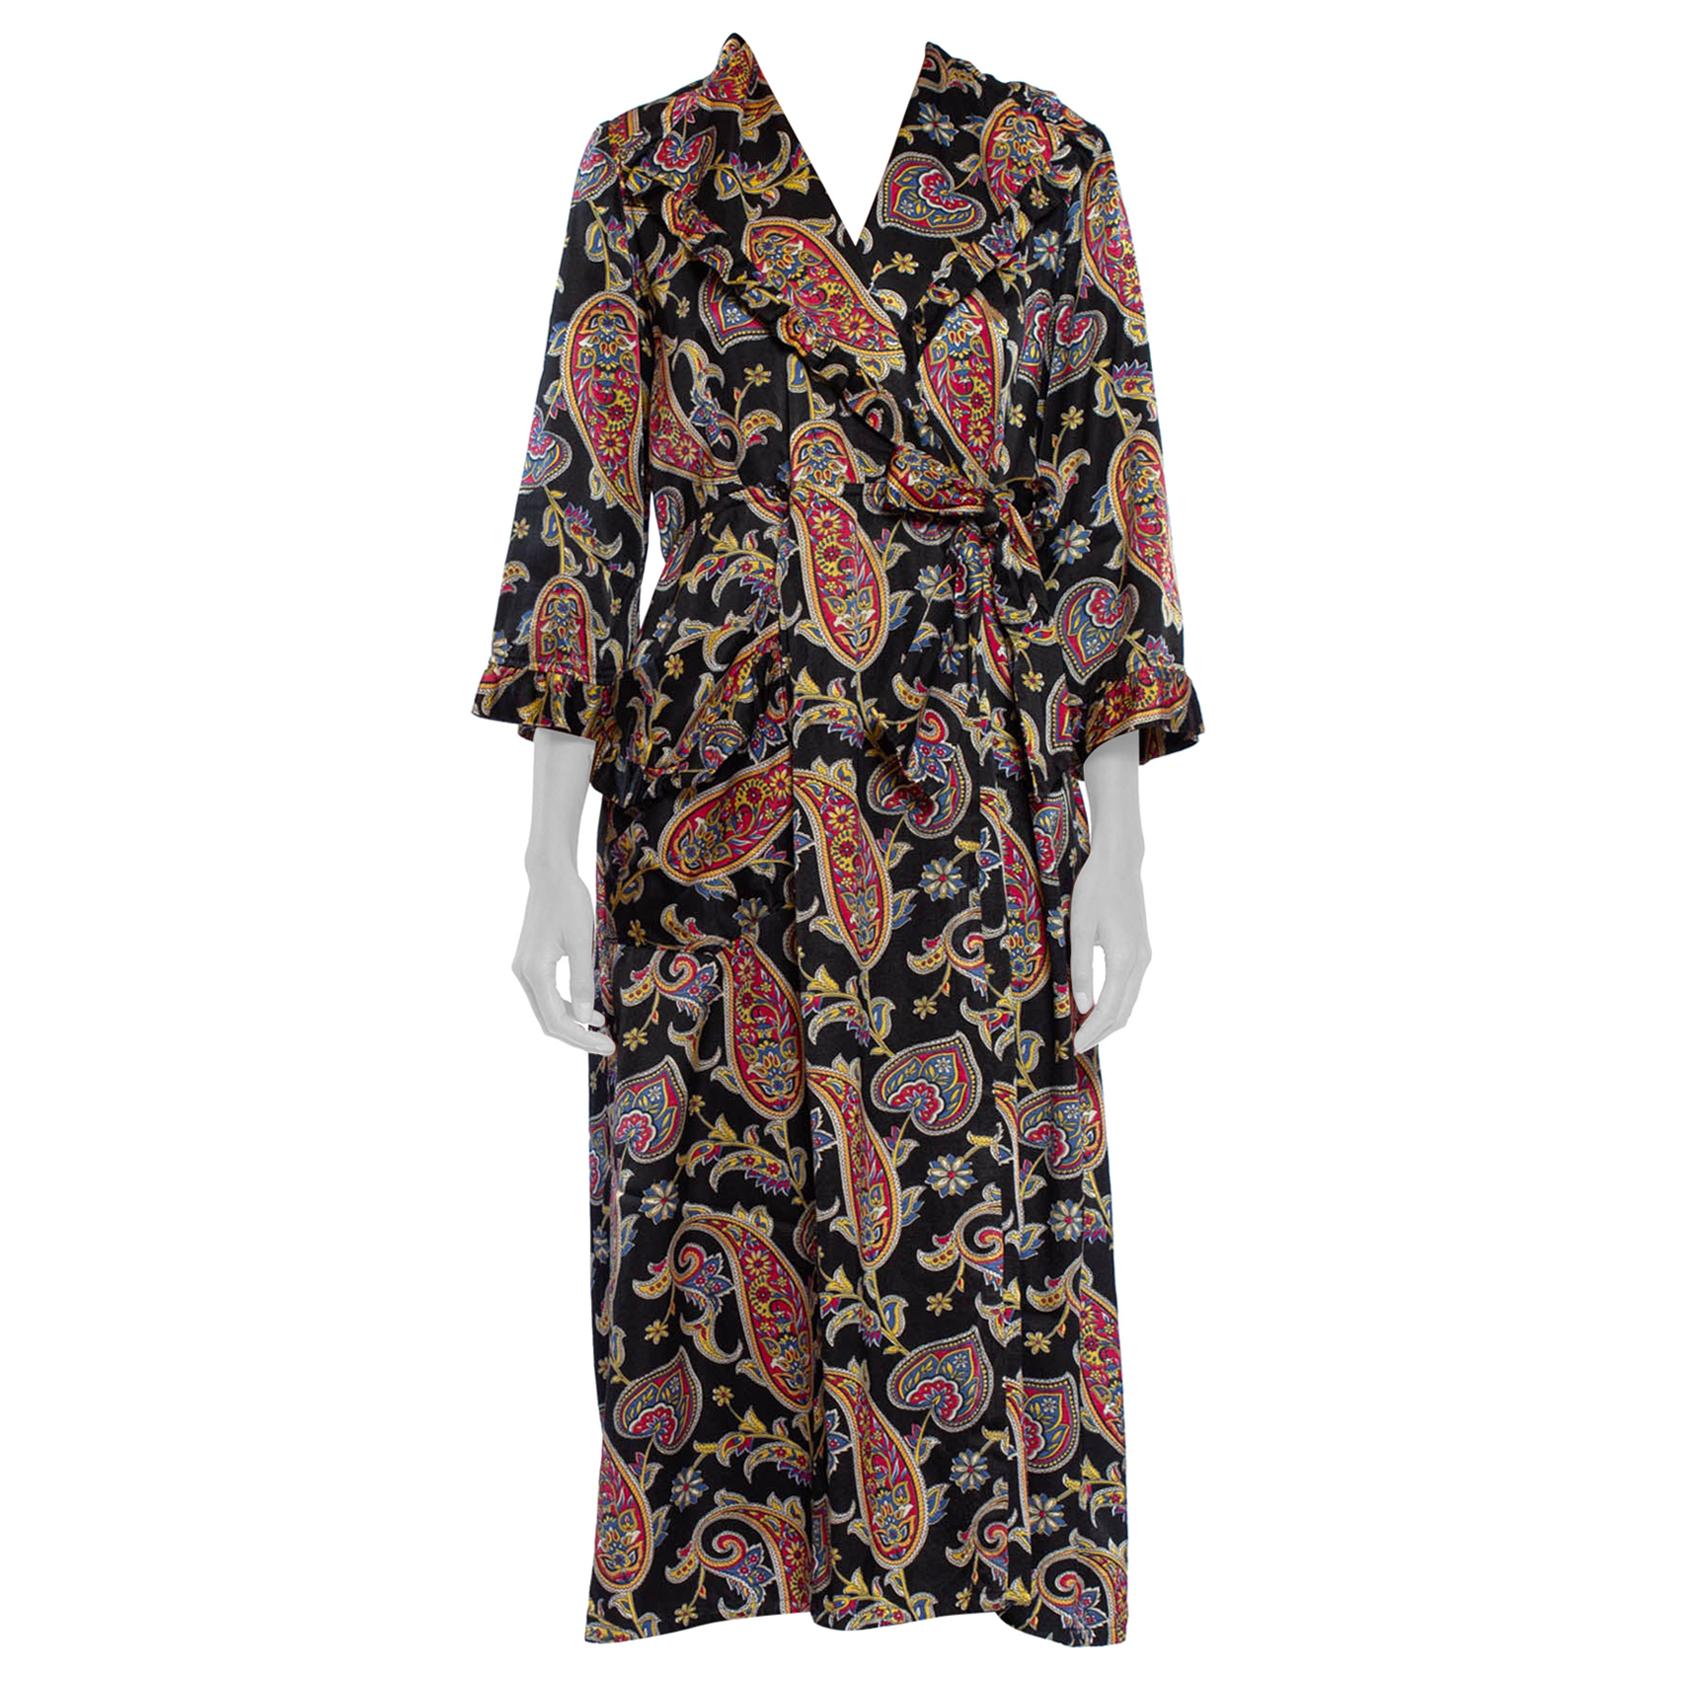 1940S Black Paisley Cotton & Rayon Satin Faced Fleece Robe